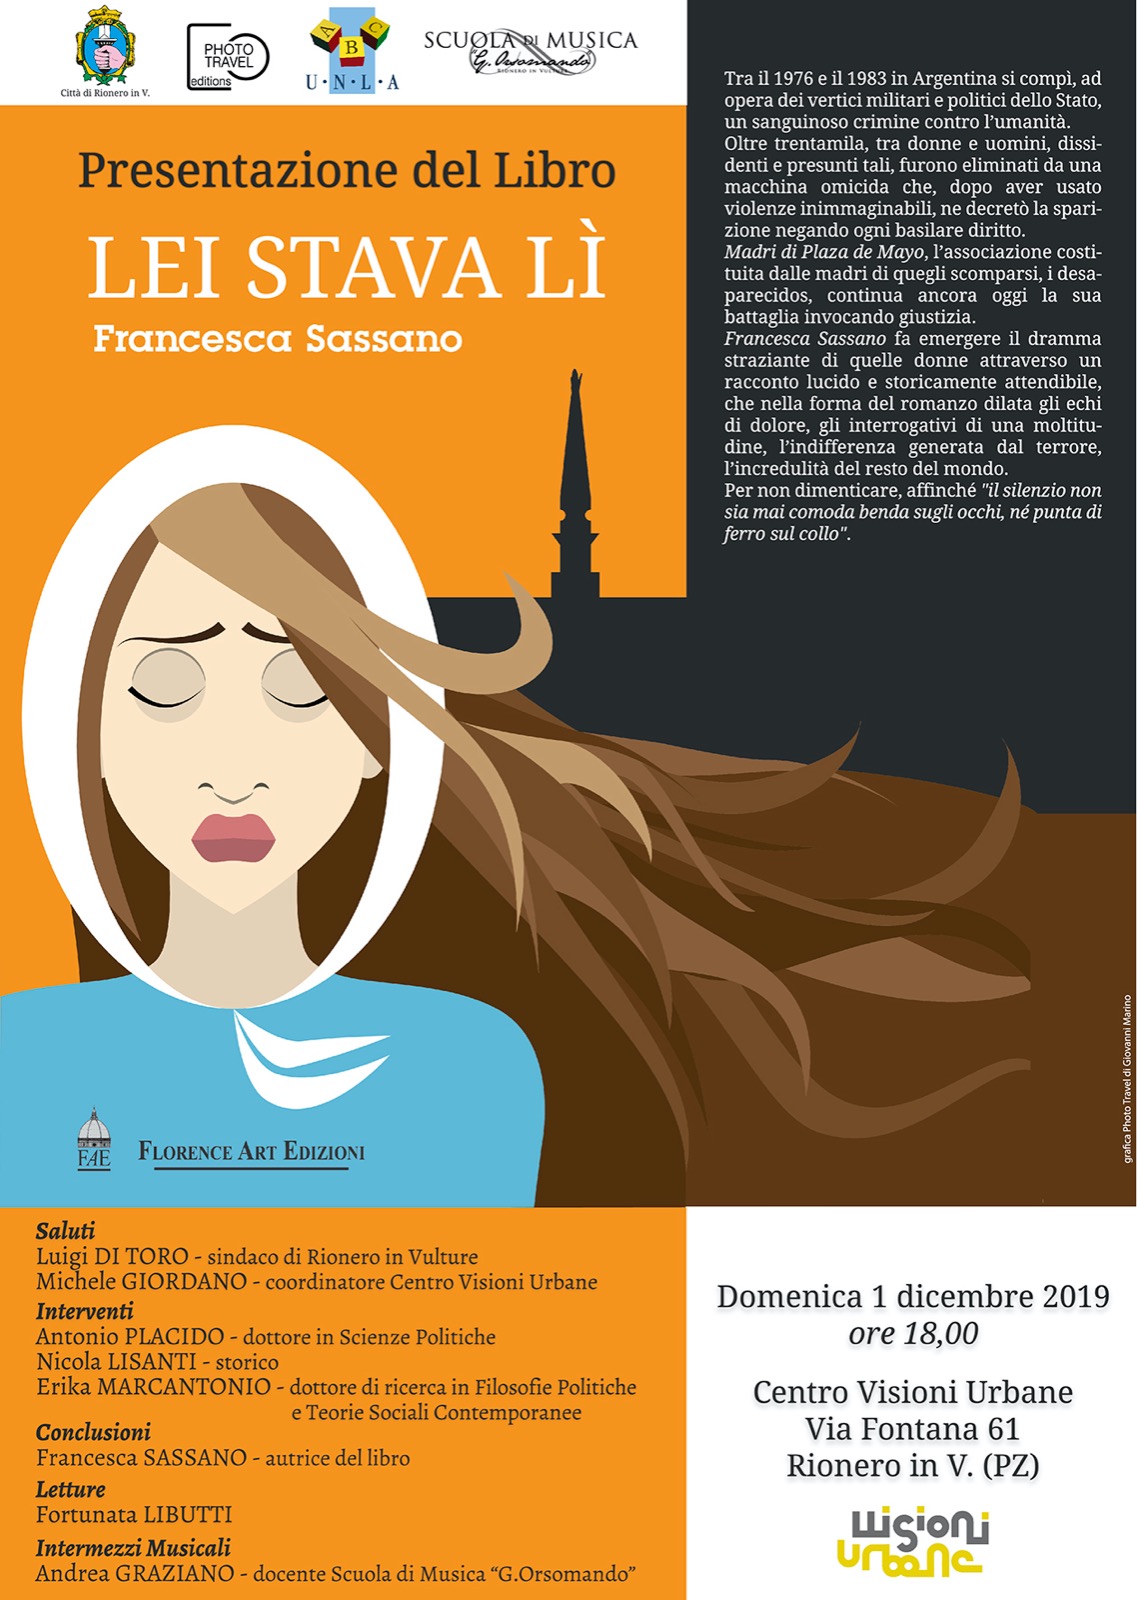 Presentazione del libro "LEI STAVA LI'" di Francesca Sassano